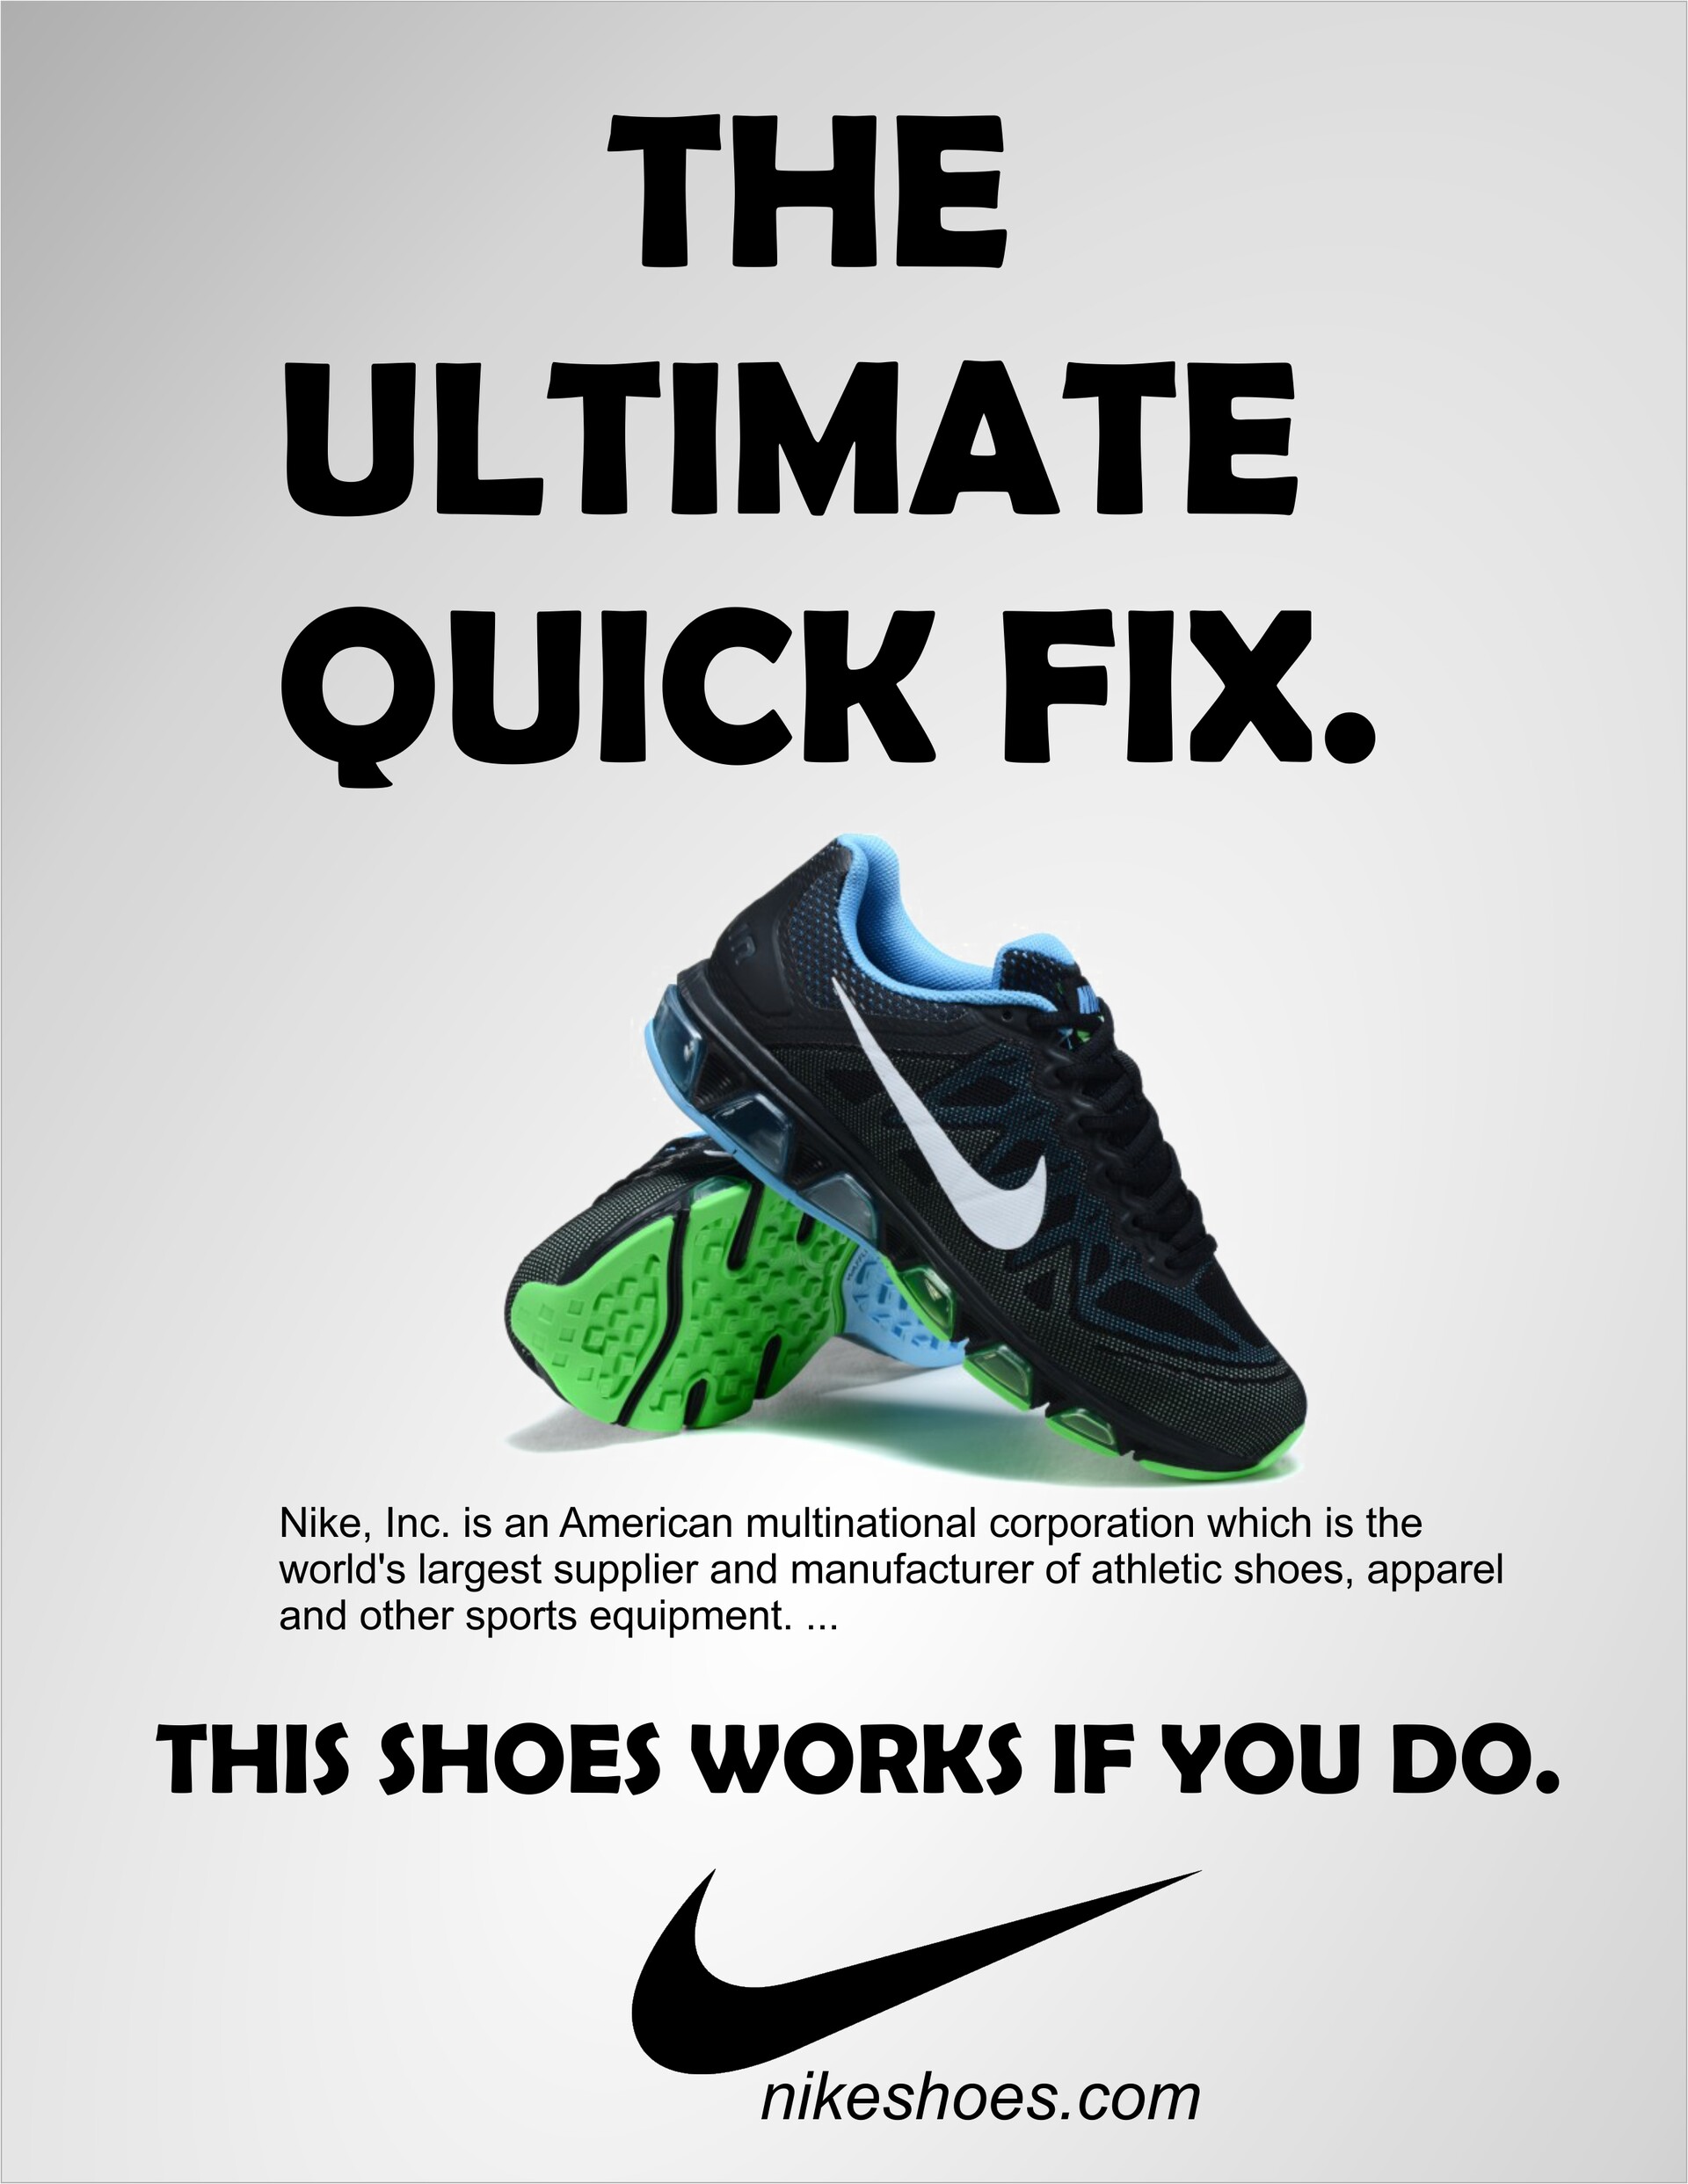 nike shoe advert